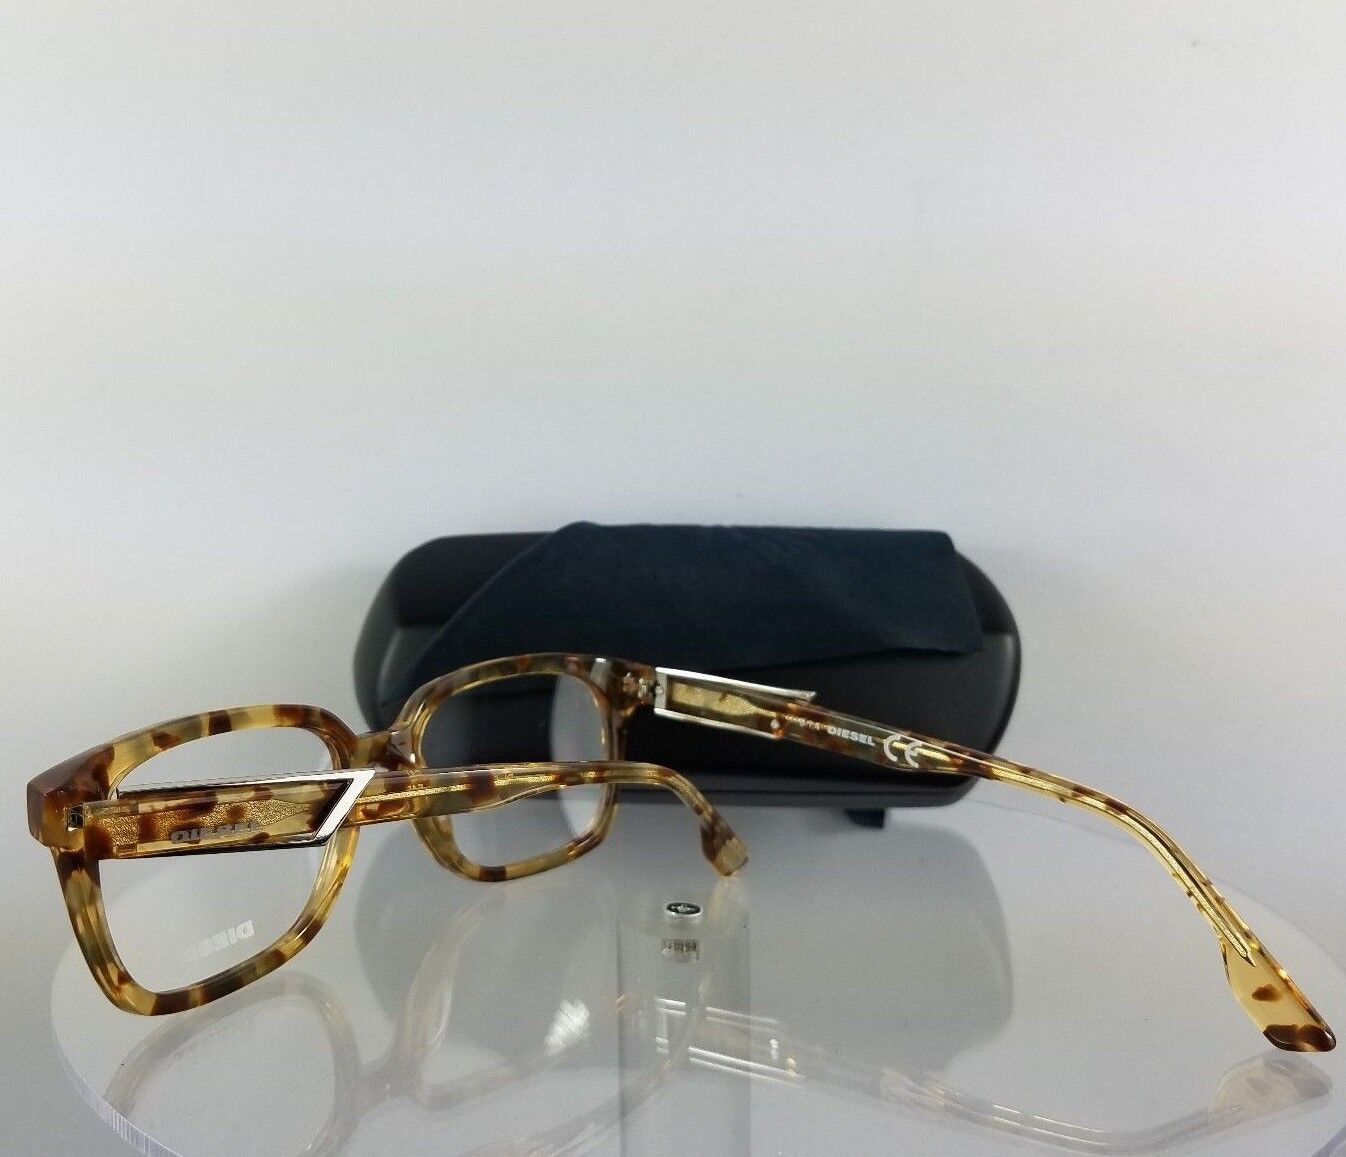 100% Authentic Brand New Diesel Eyeglasses DL 5111 Light Tortoise 053 Frame